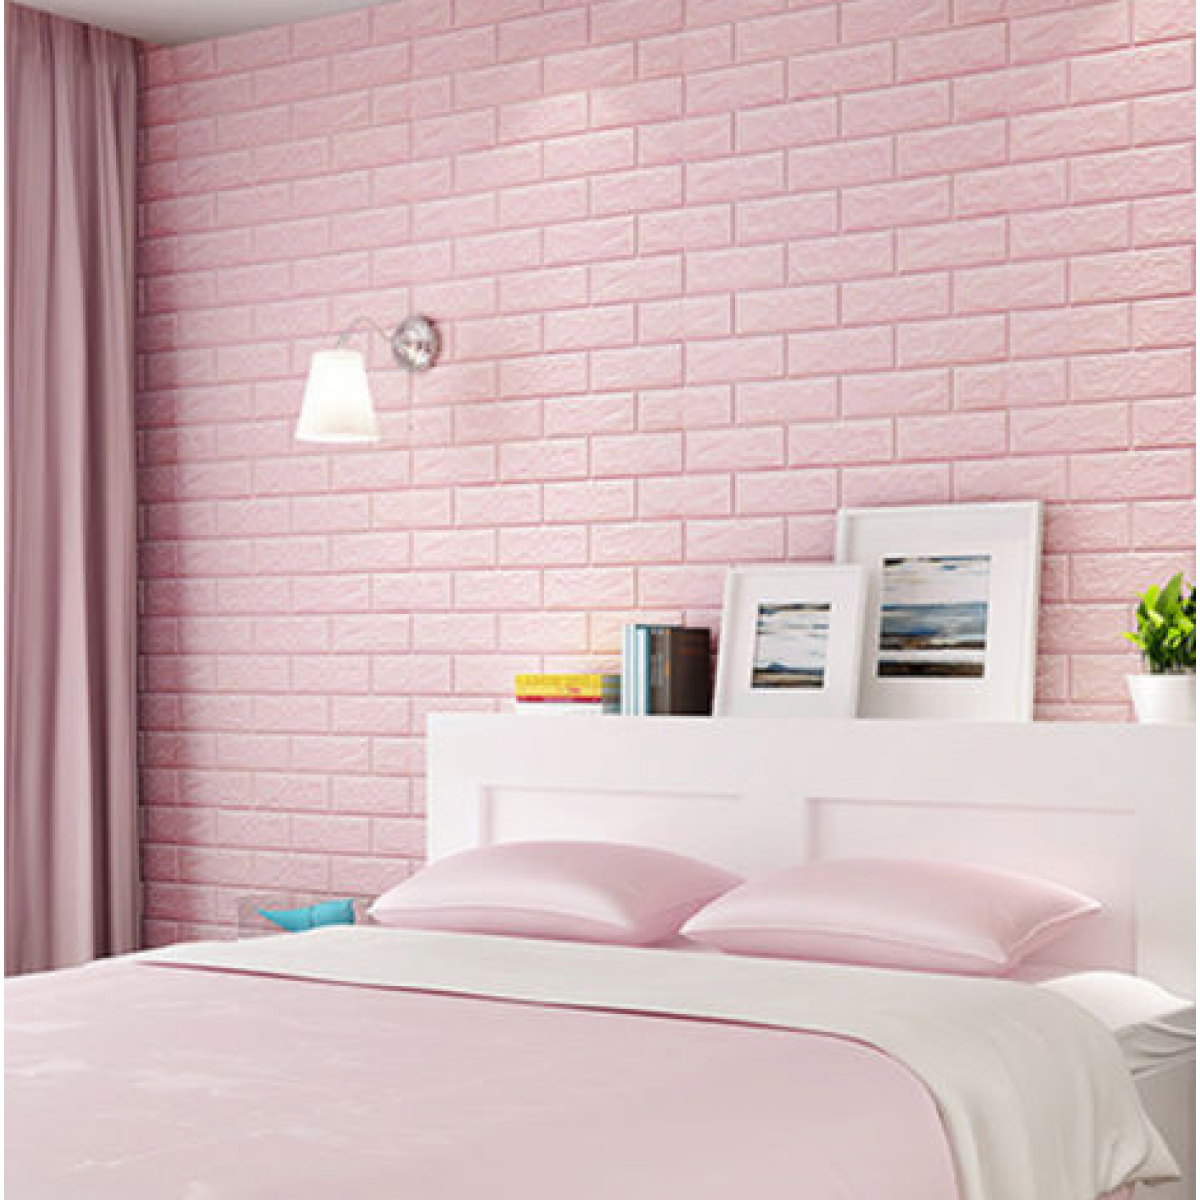 泡レンガ壁紙,寝室,壁,ピンク,ルーム,家具